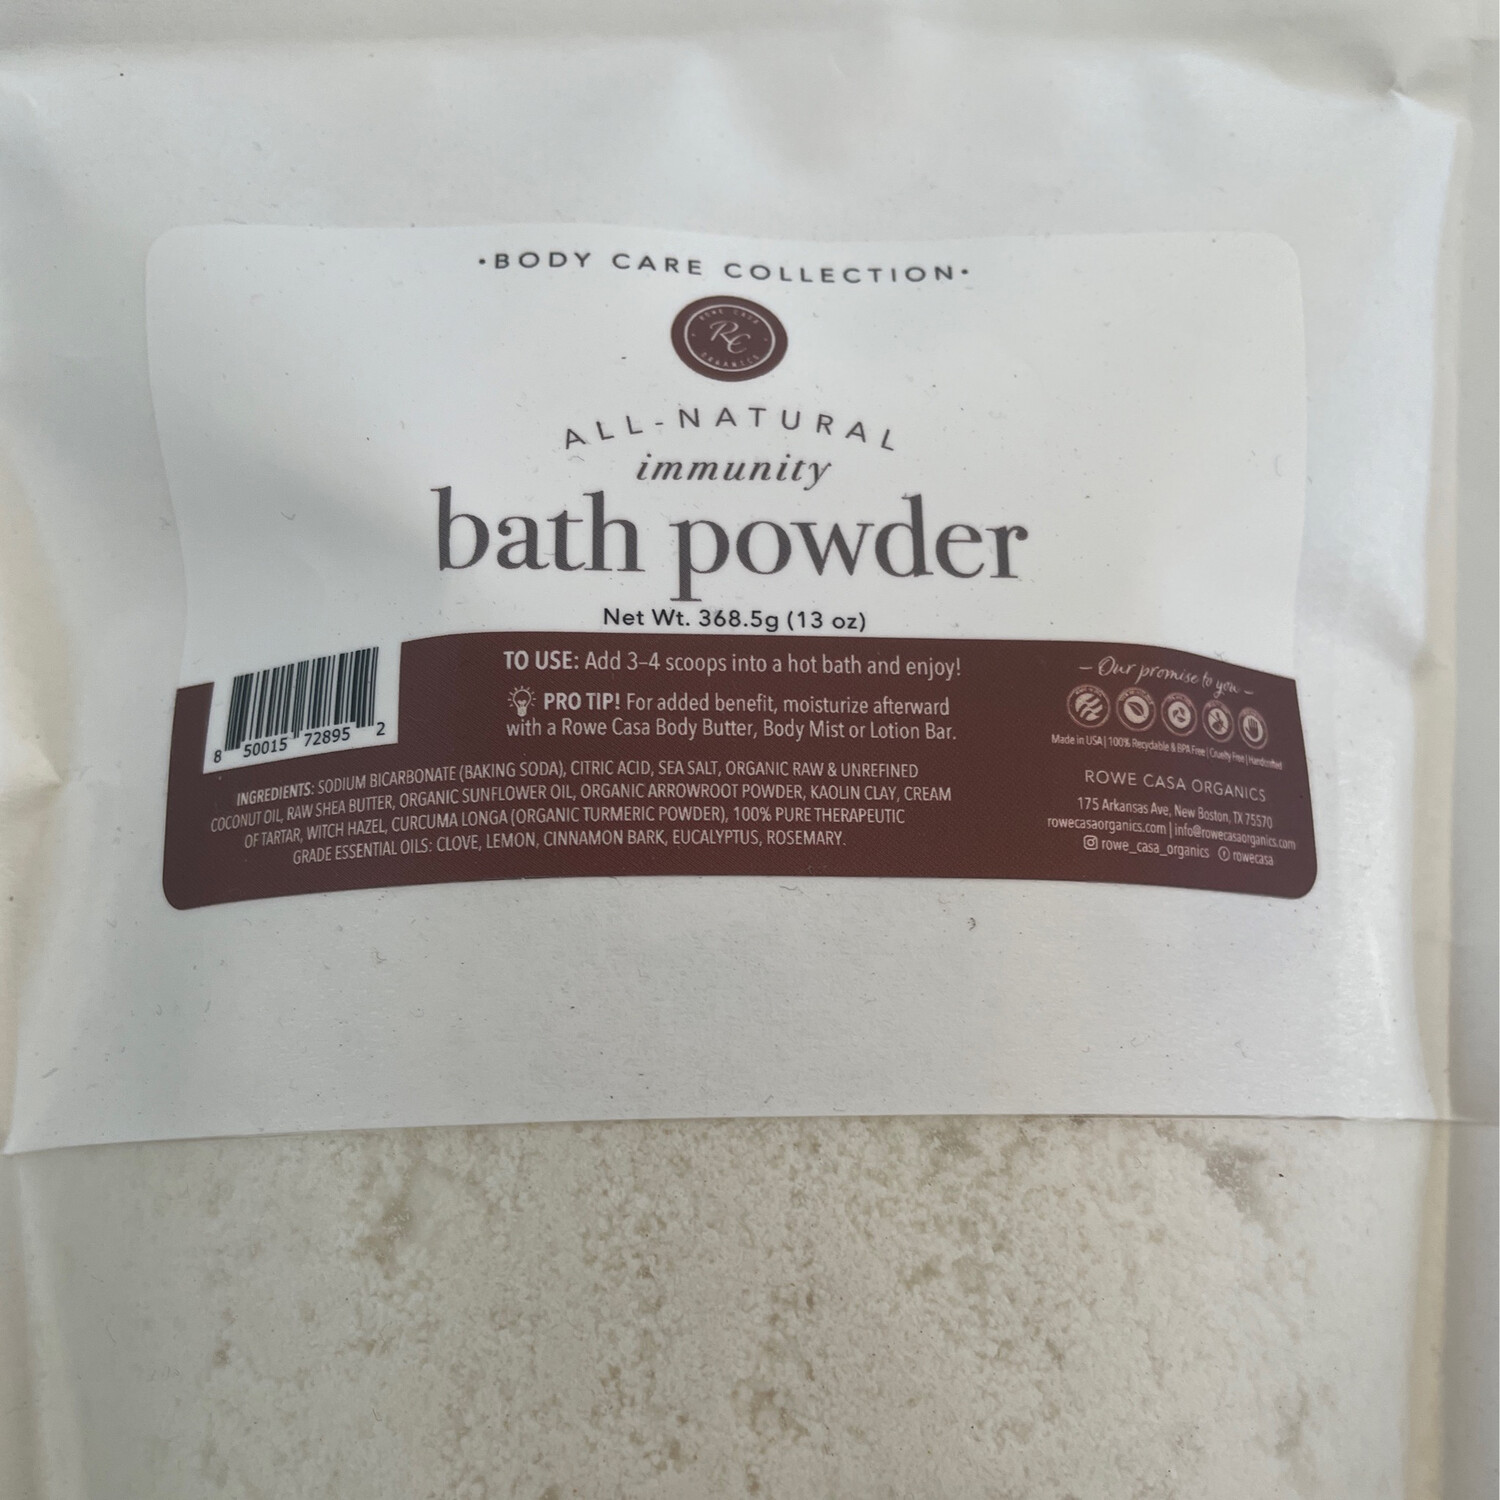 Rowe Casa Organics Bath Powder Immunity 13oz